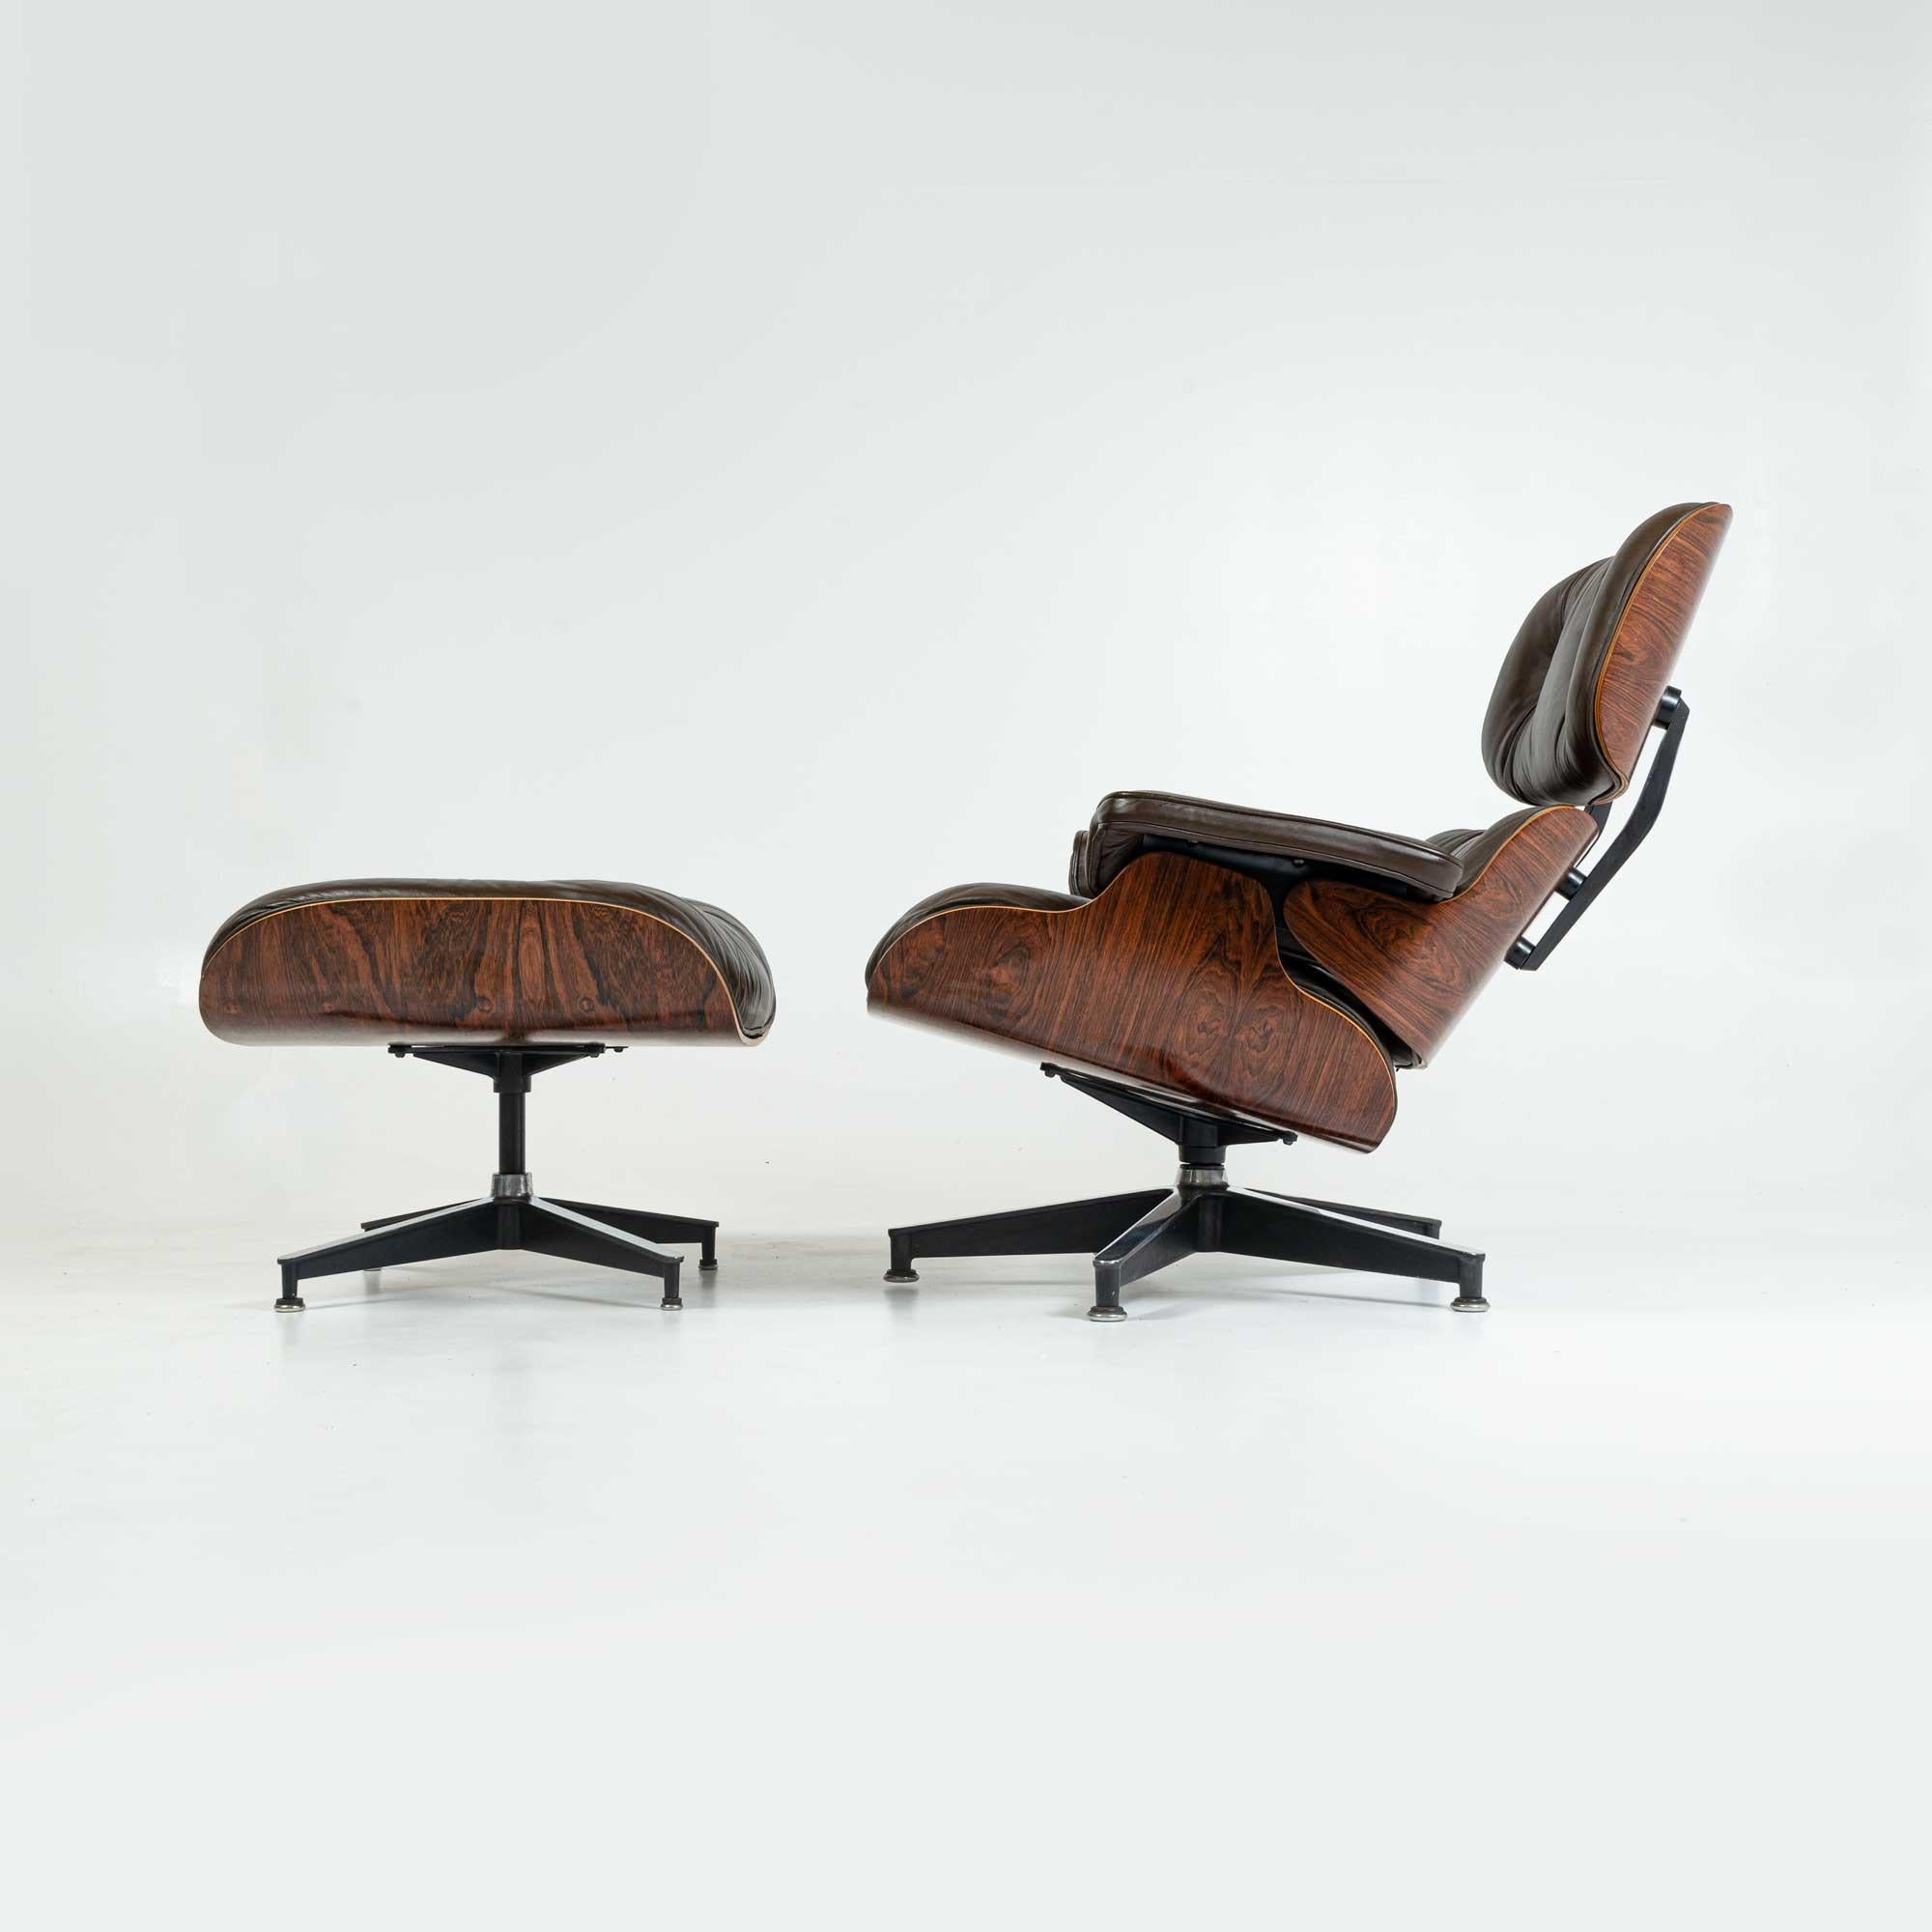 Vollständig restaurierter Eames Lounge Chair der 3. Generation aus Palisanderholz mit Ottomane und originalen schokoladenfarbenen Lederkissen. Der Stuhl wurde restauriert und mit Lack überzogen. Die Metallrahmenelemente wurden auf Hochglanz poliert.